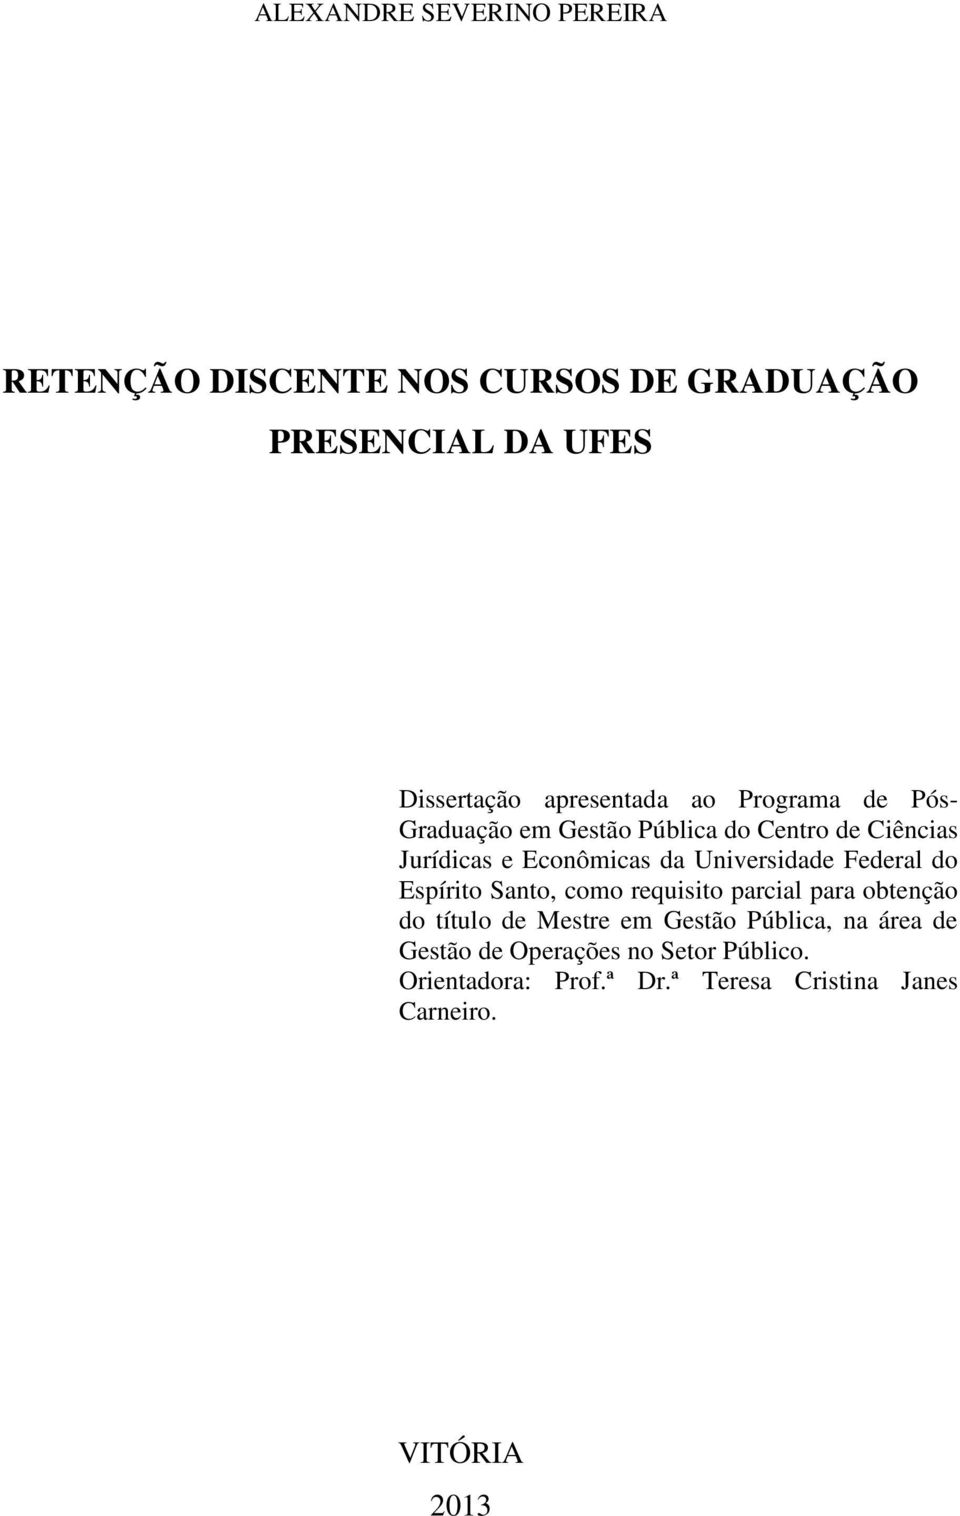 Universidade Federal do Espírito Santo, como requisito parcial para obtenção do título de Mestre em Gestão